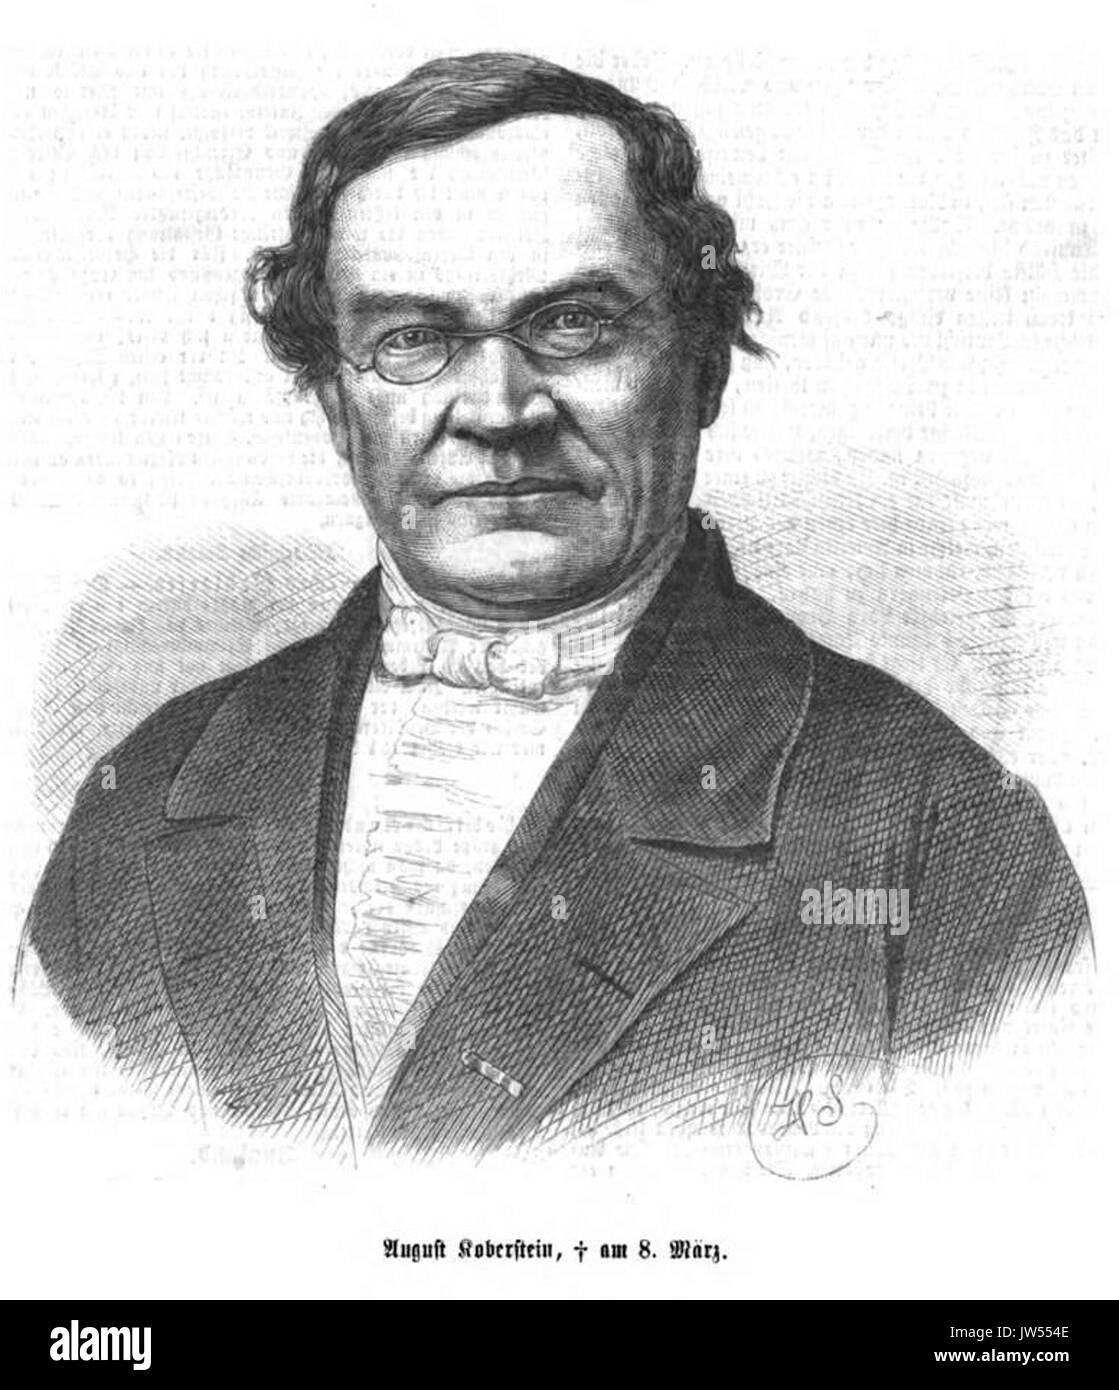 Karl August Koberstein (IZ 54 1870 S 321 HScherenberg) Stock Photo